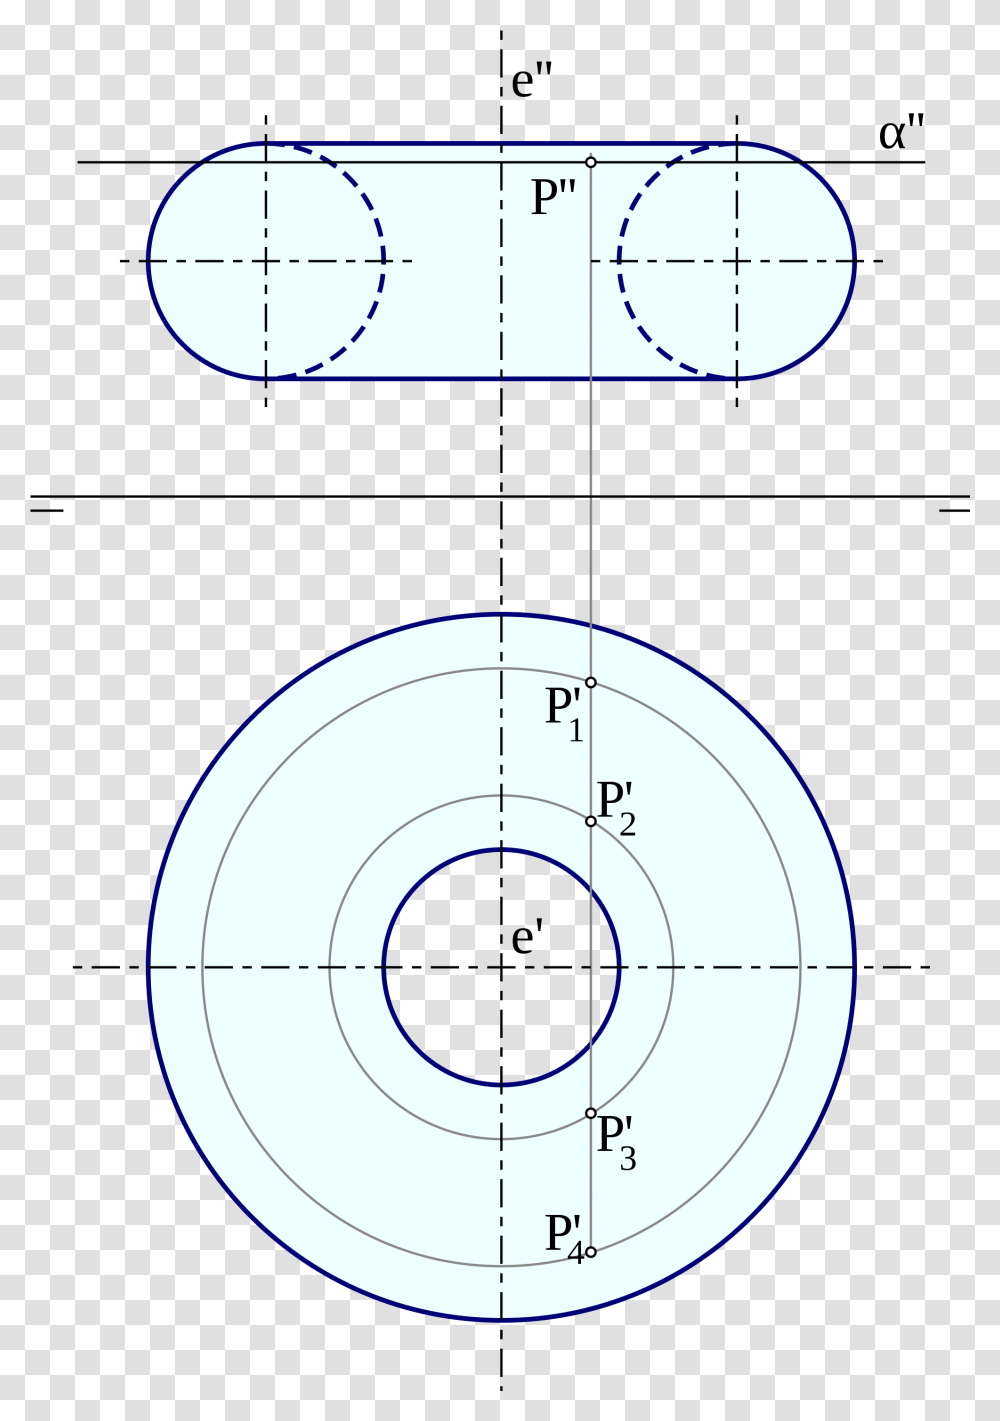 Figuras Geometricas Toro Dona Download Circle, Number, Shooting Range Transparent Png